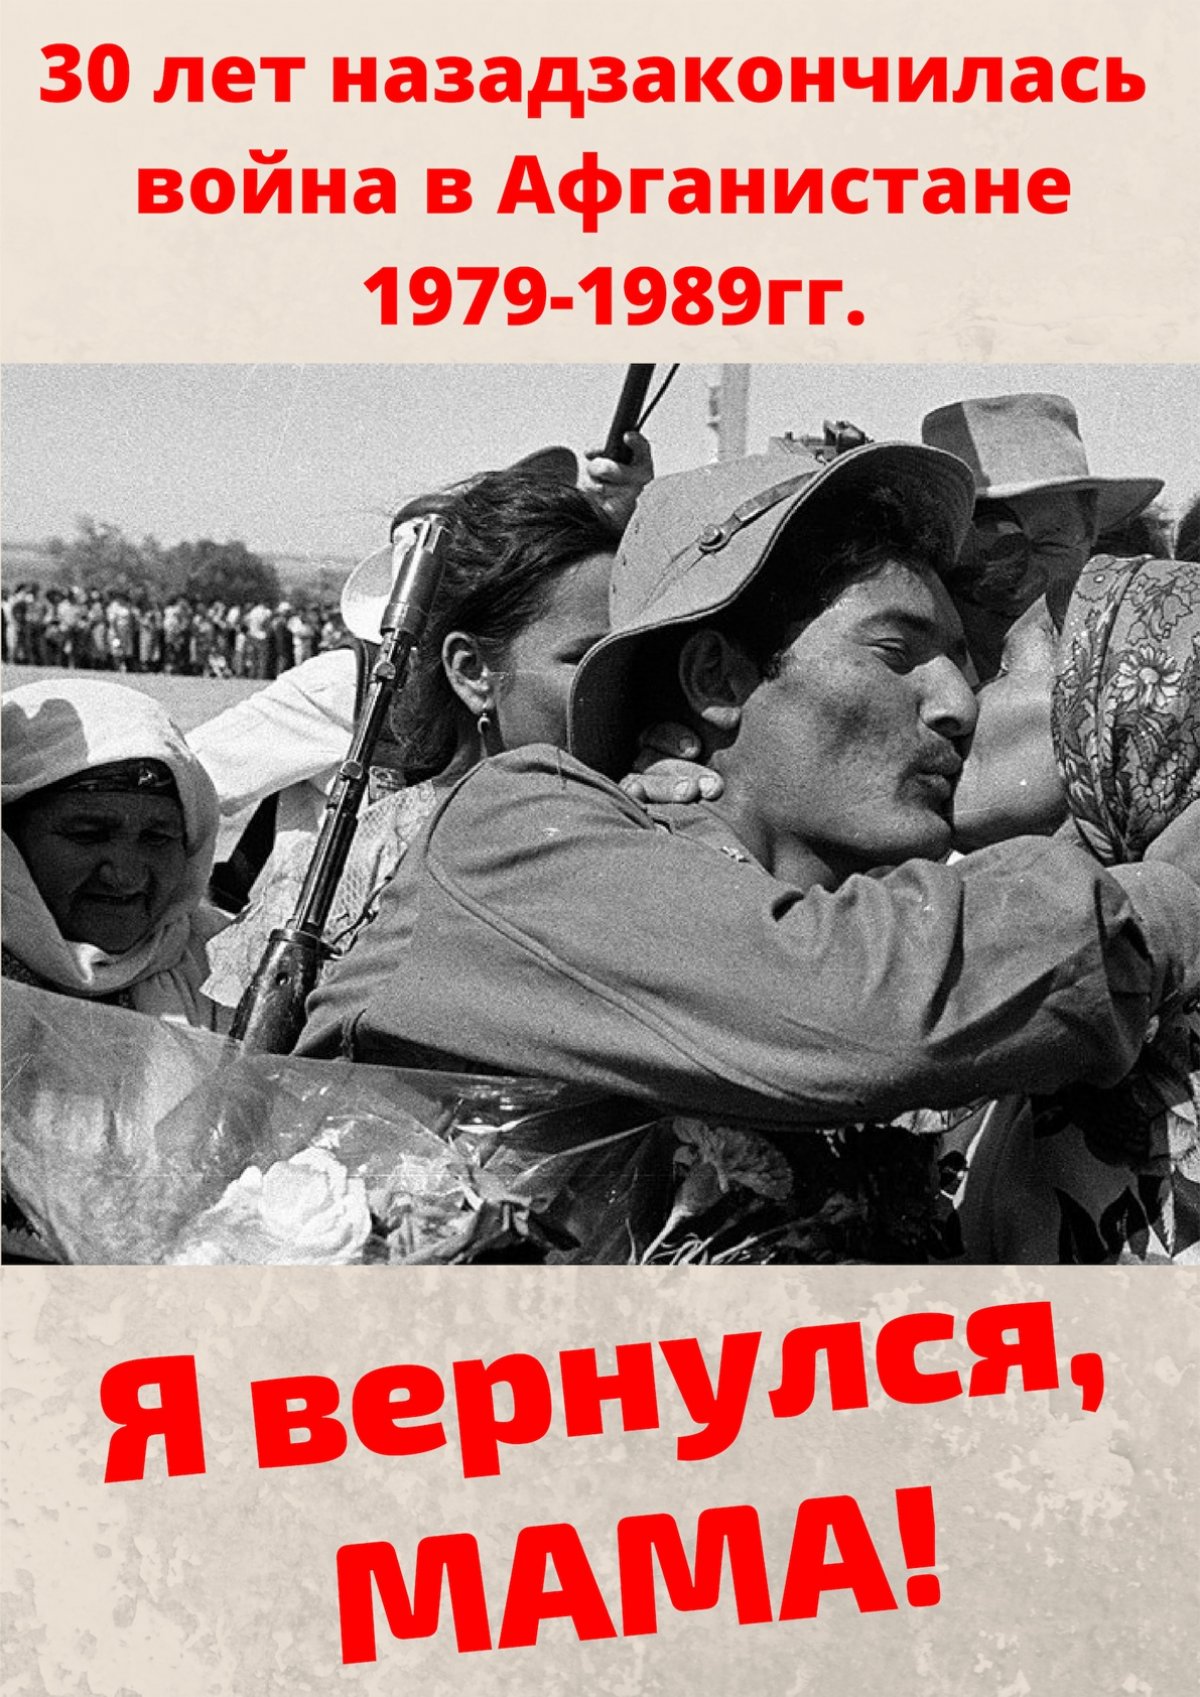 Сегодня, 15 февраля - 30 лет со дня вывода Советских войск из Демократической Республики Афганистан.